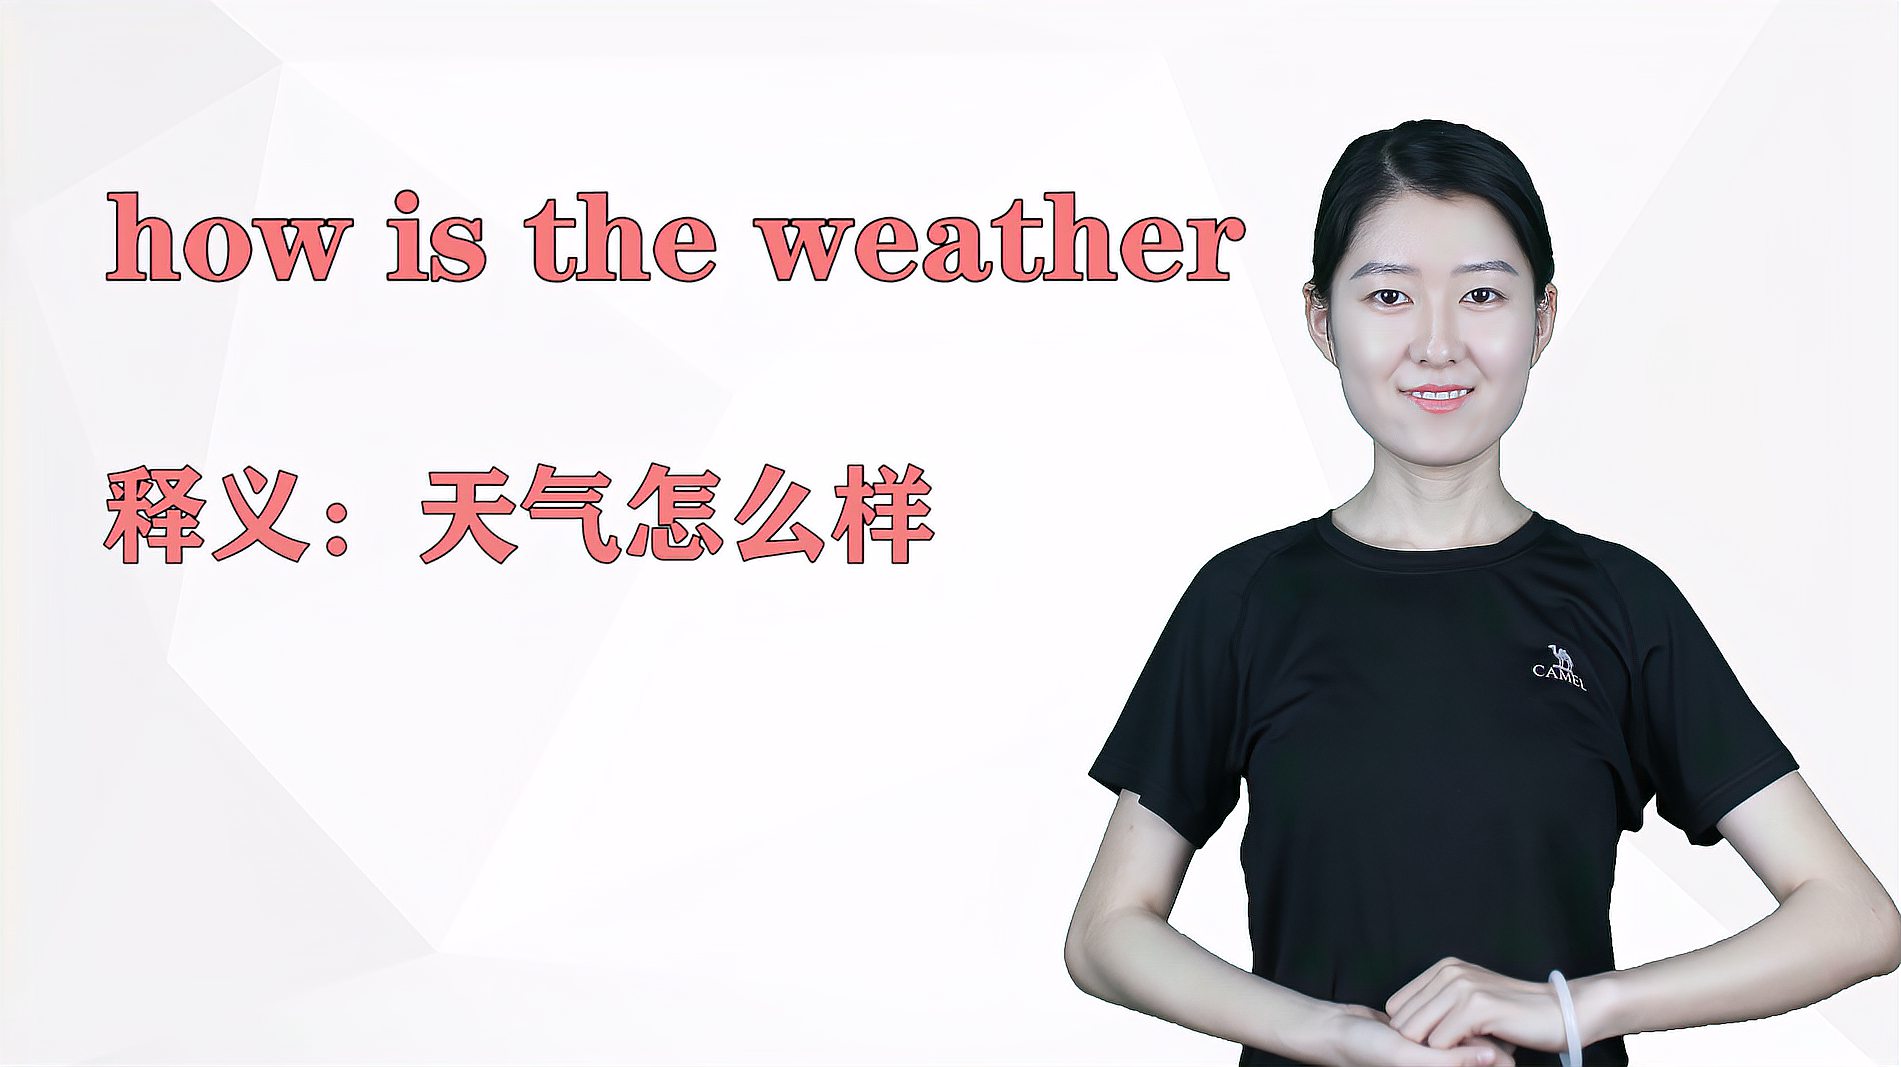 [图]济南灰姑娘:how is the weather英语解析以及使用场景